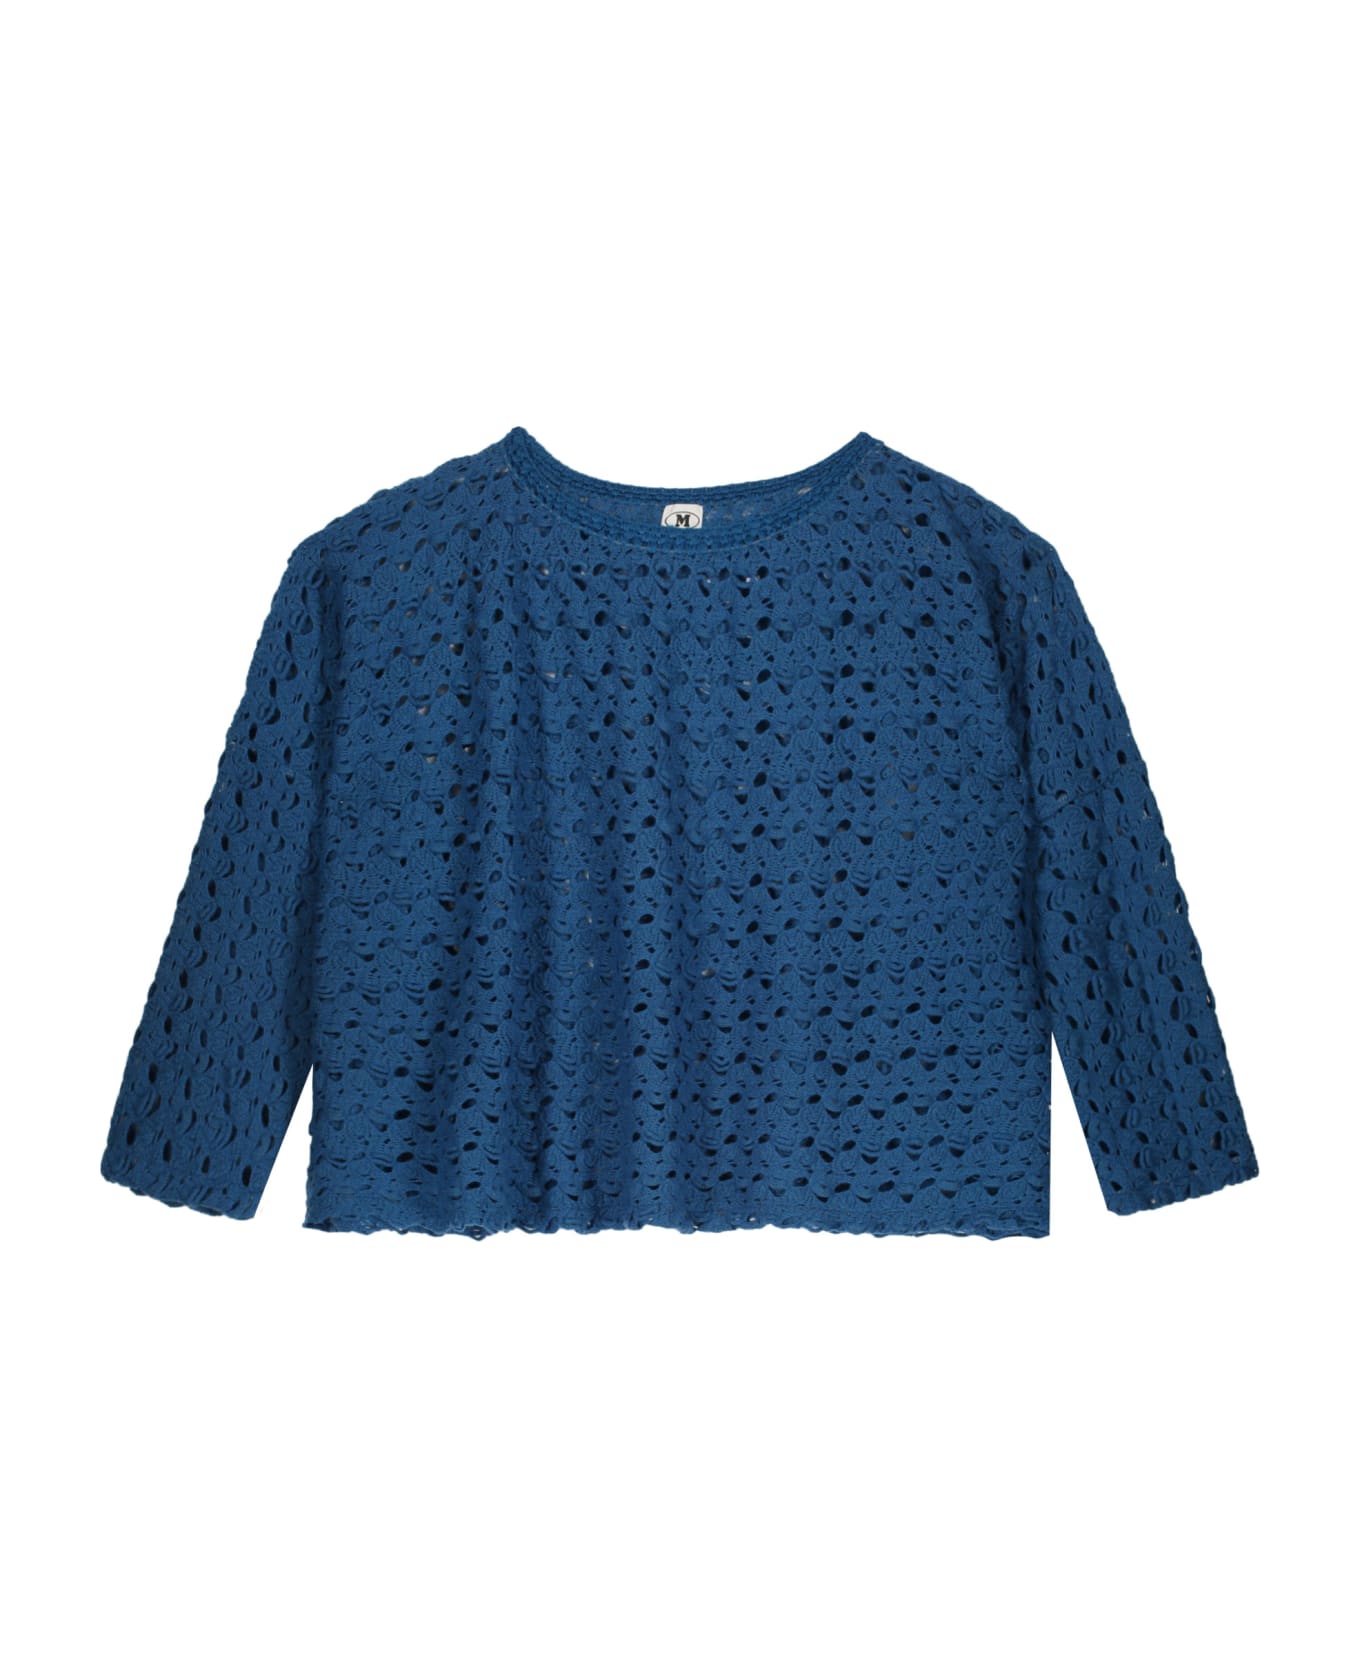 M Missoni Wool Blend Sweater - blue